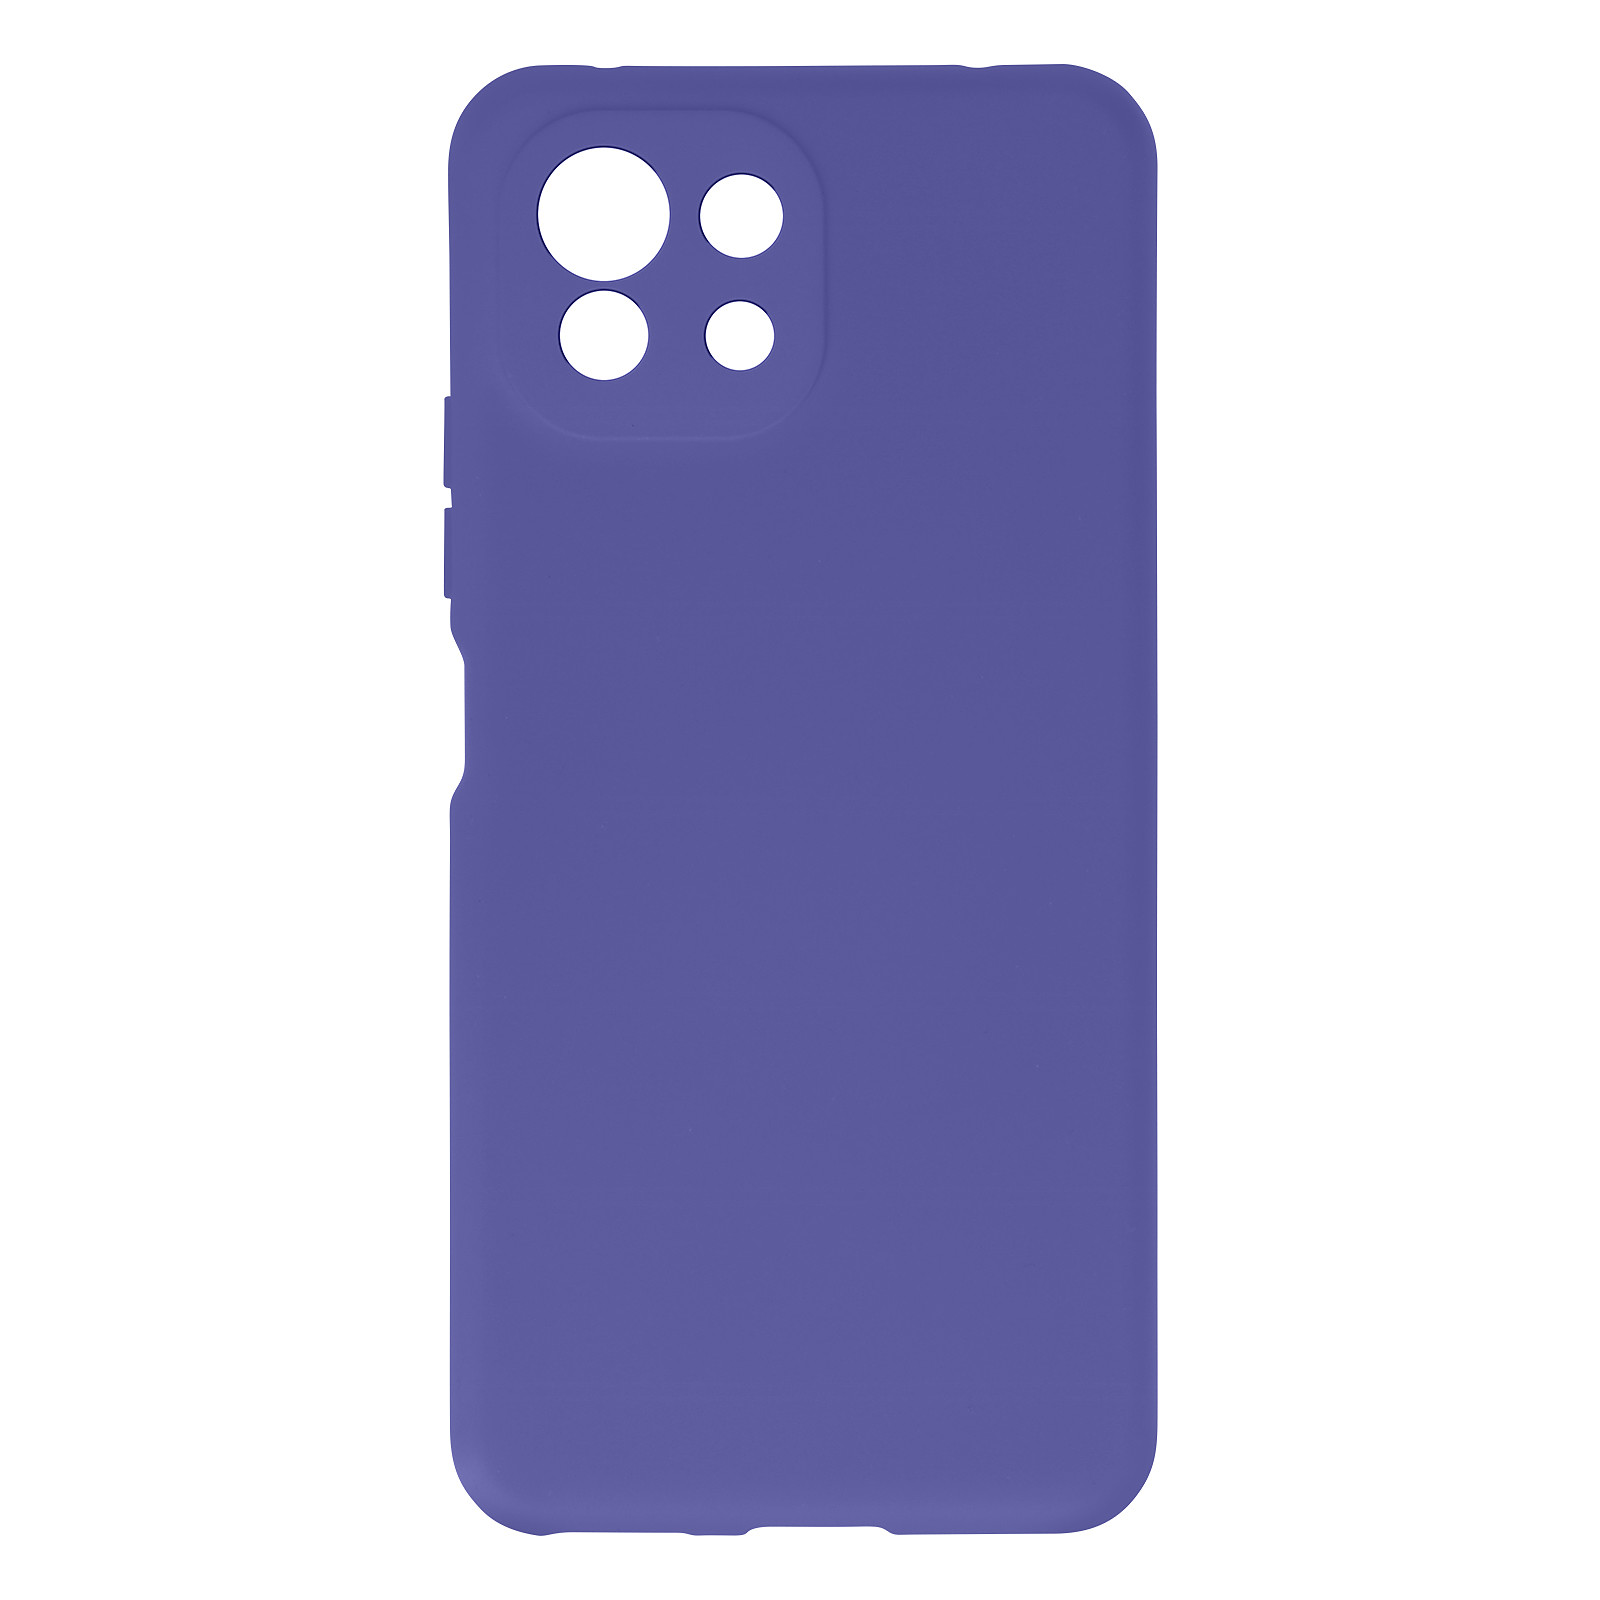 Avizar Coque pour Xiaomi Mi 11 Lite Silicone Semi-rigide Finition Soft Touch Fine violet - Coque telephone Avizar